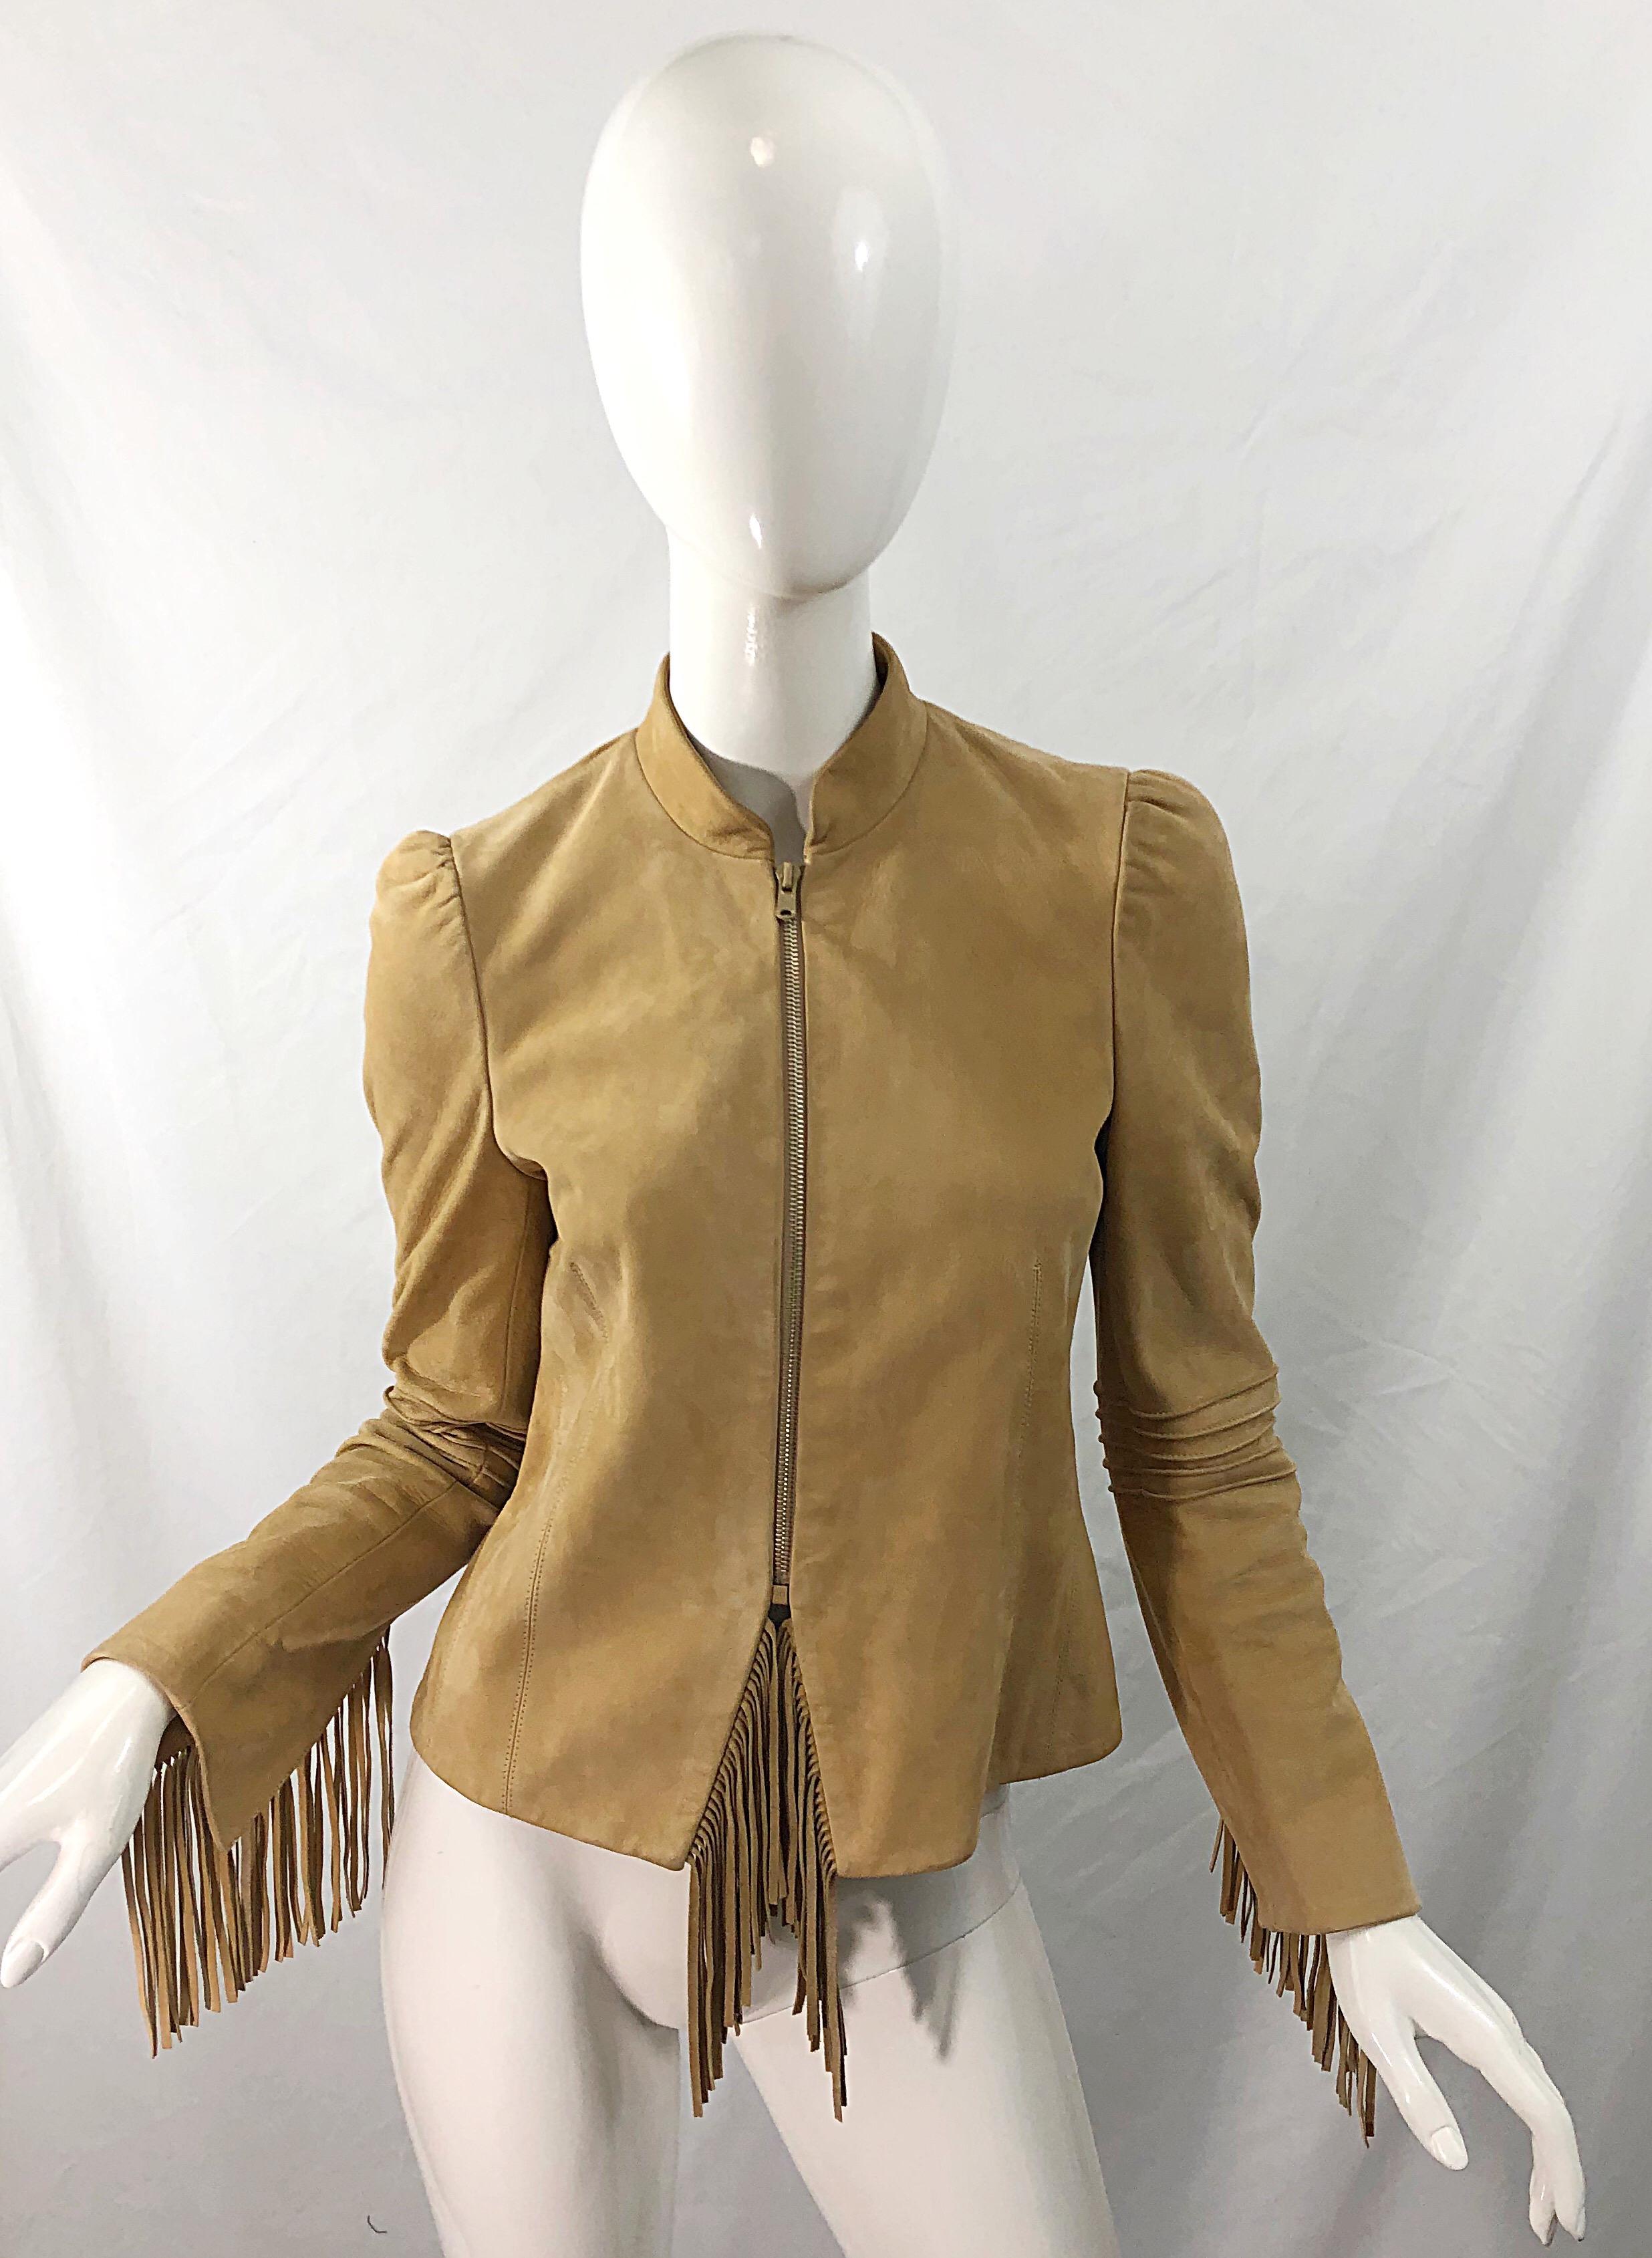 Women's Katayone Adeli 1990s Tan Nubuck Leather Size 4 Fringe Vintage 90s Jacket